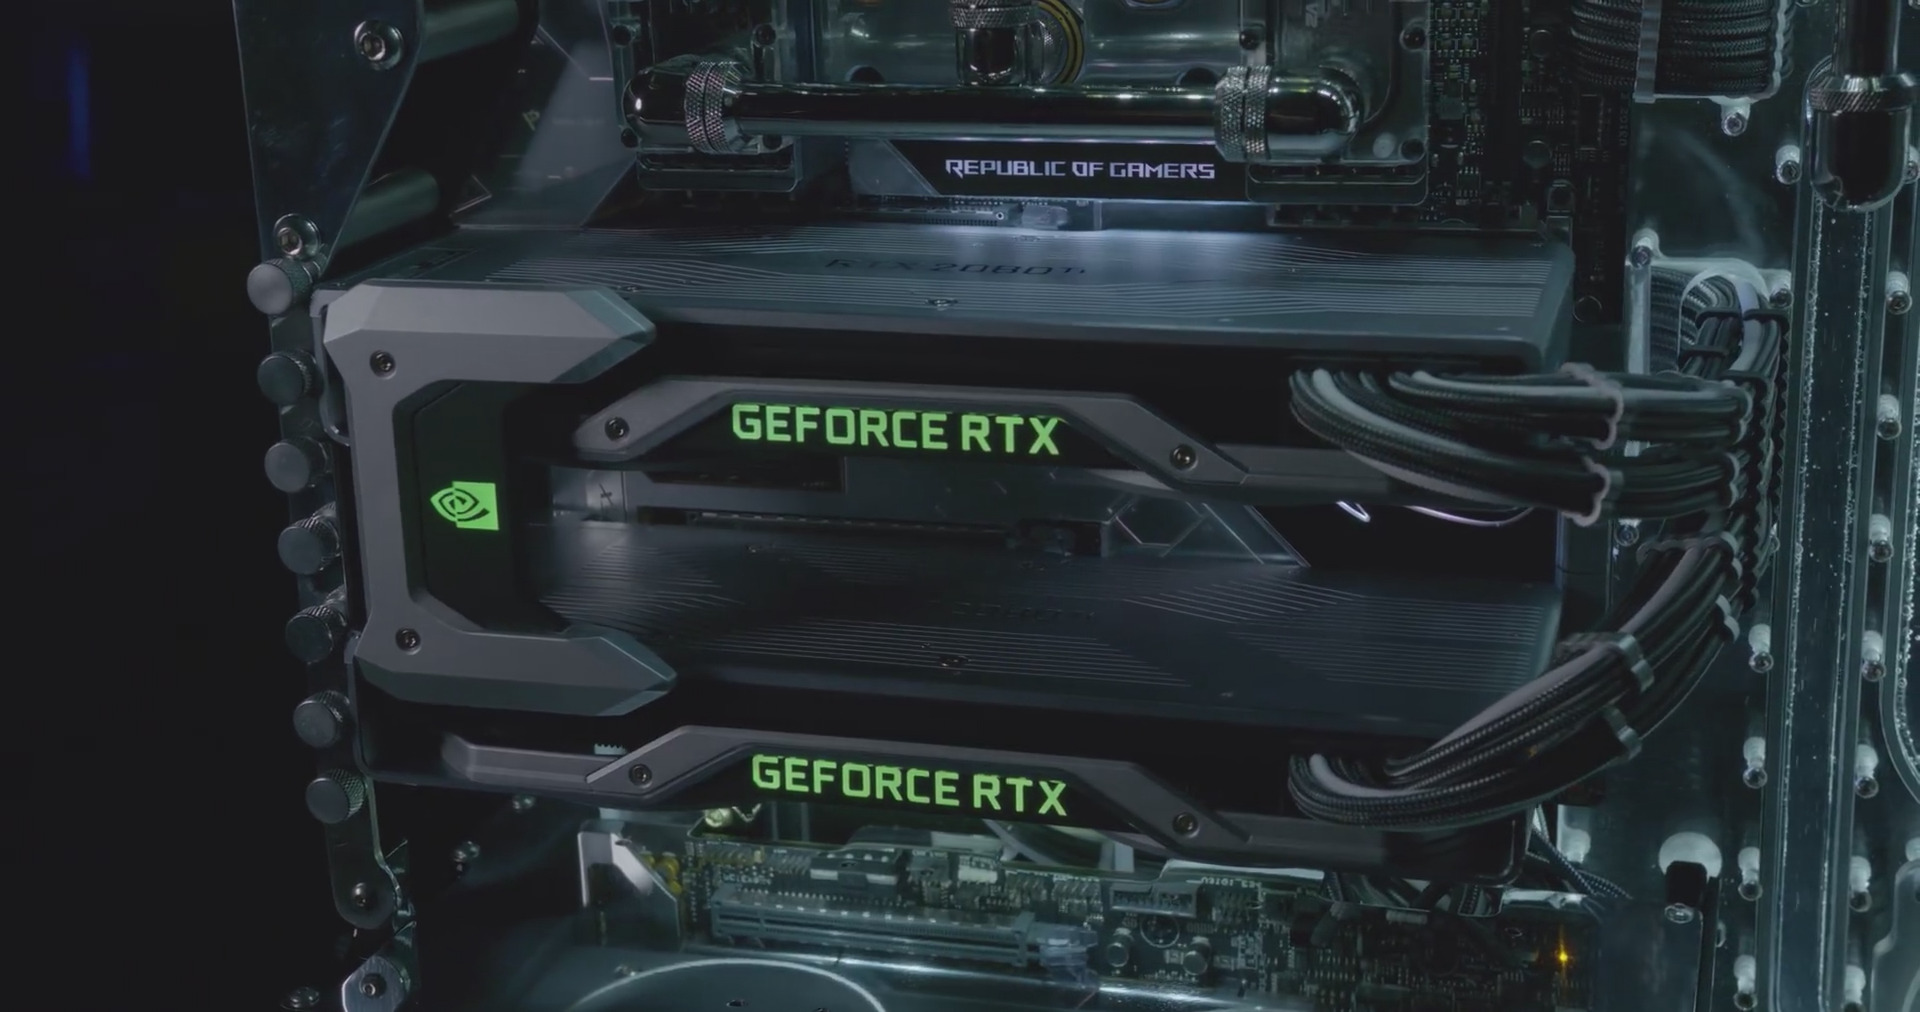 Immagine pubblicata in relazione al seguente contenuto: GeForce Garage: ecco il primo PC modded con due GeForce RTX 2080 Ti | Nome immagine: news28630_GeForce-Garage-Turing-L3p-Spectre-feat-GeForce-RTX-2080-Ti_2.jpg